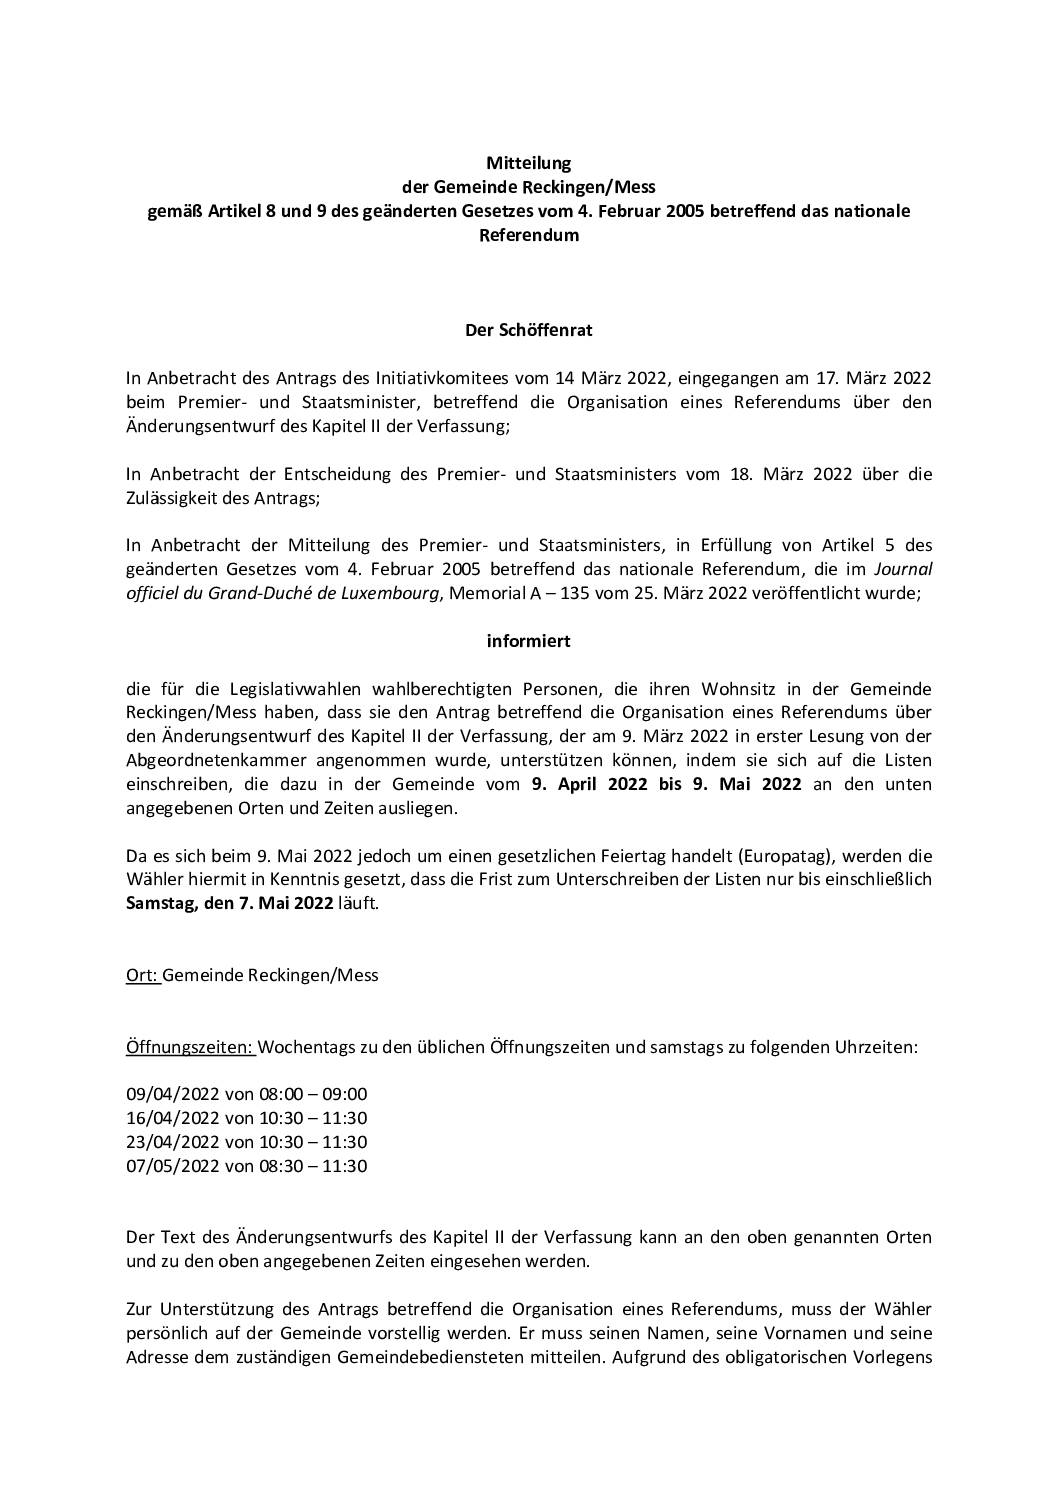 31.03.2022 – Organisation von einem Referendum